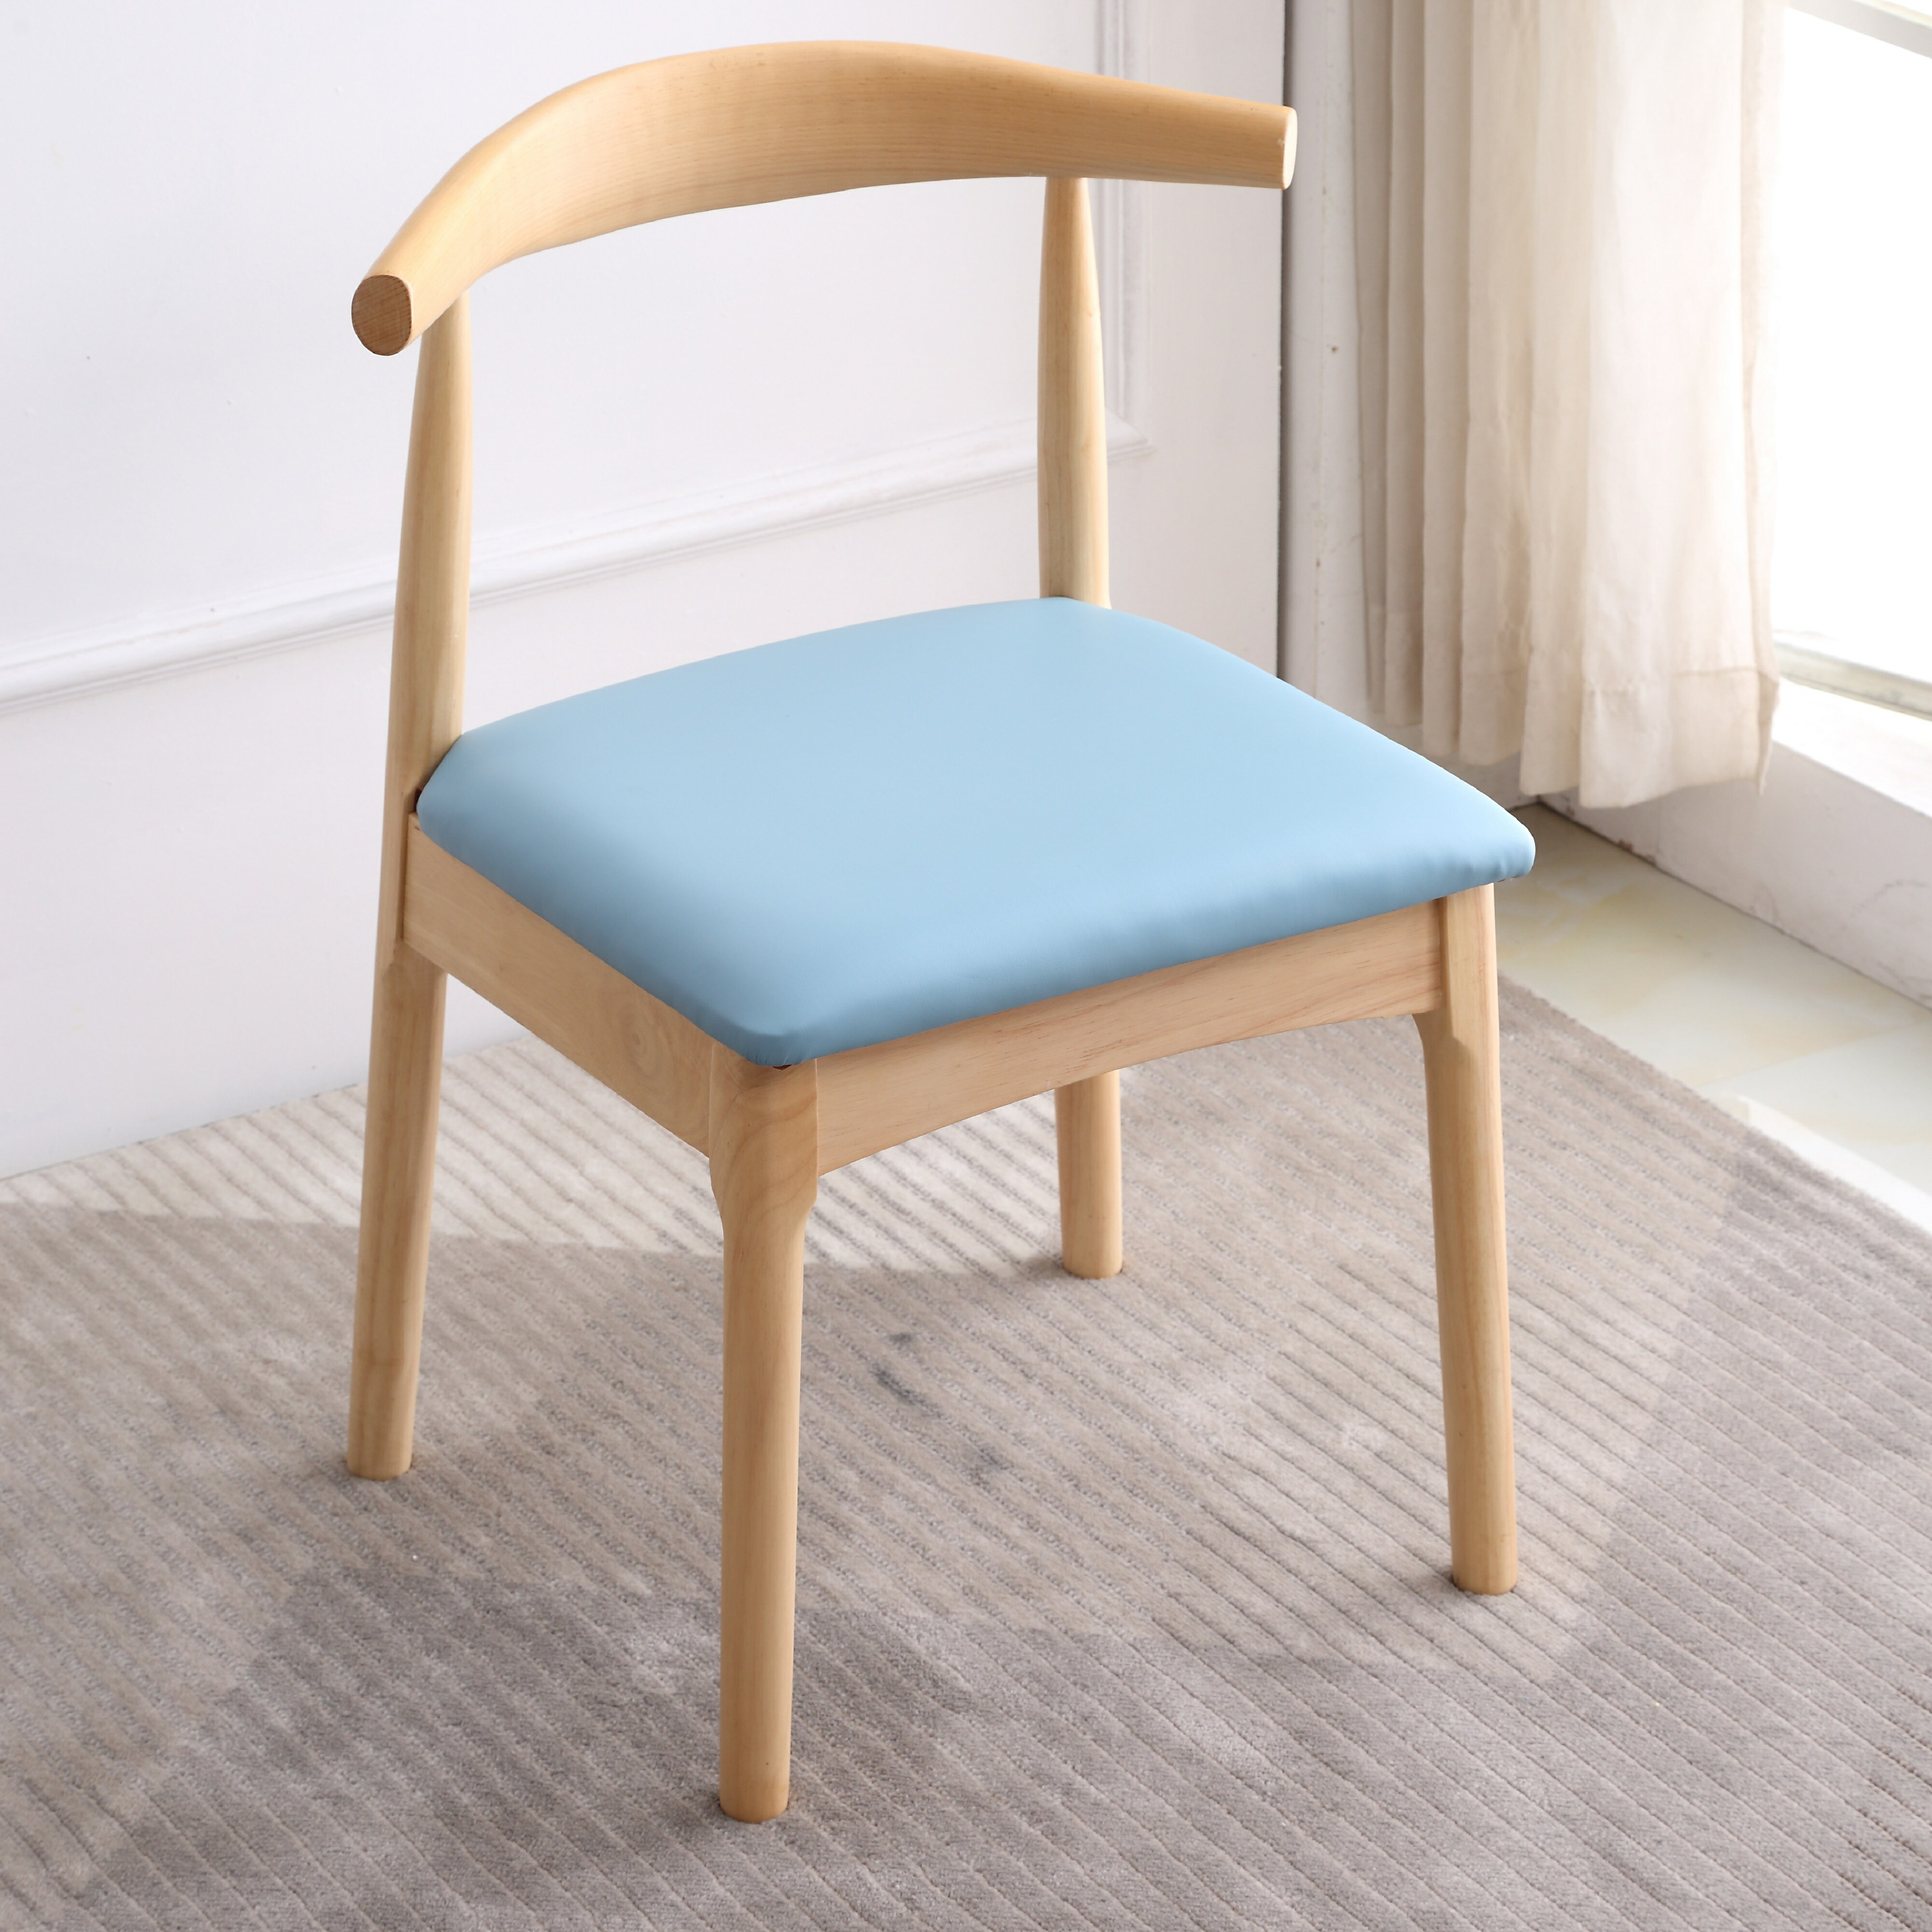 牛角椅 全實木餐椅家用椅子靠背椅現代簡約北歐書桌椅寫字台凳子牛角椅『XY33872』